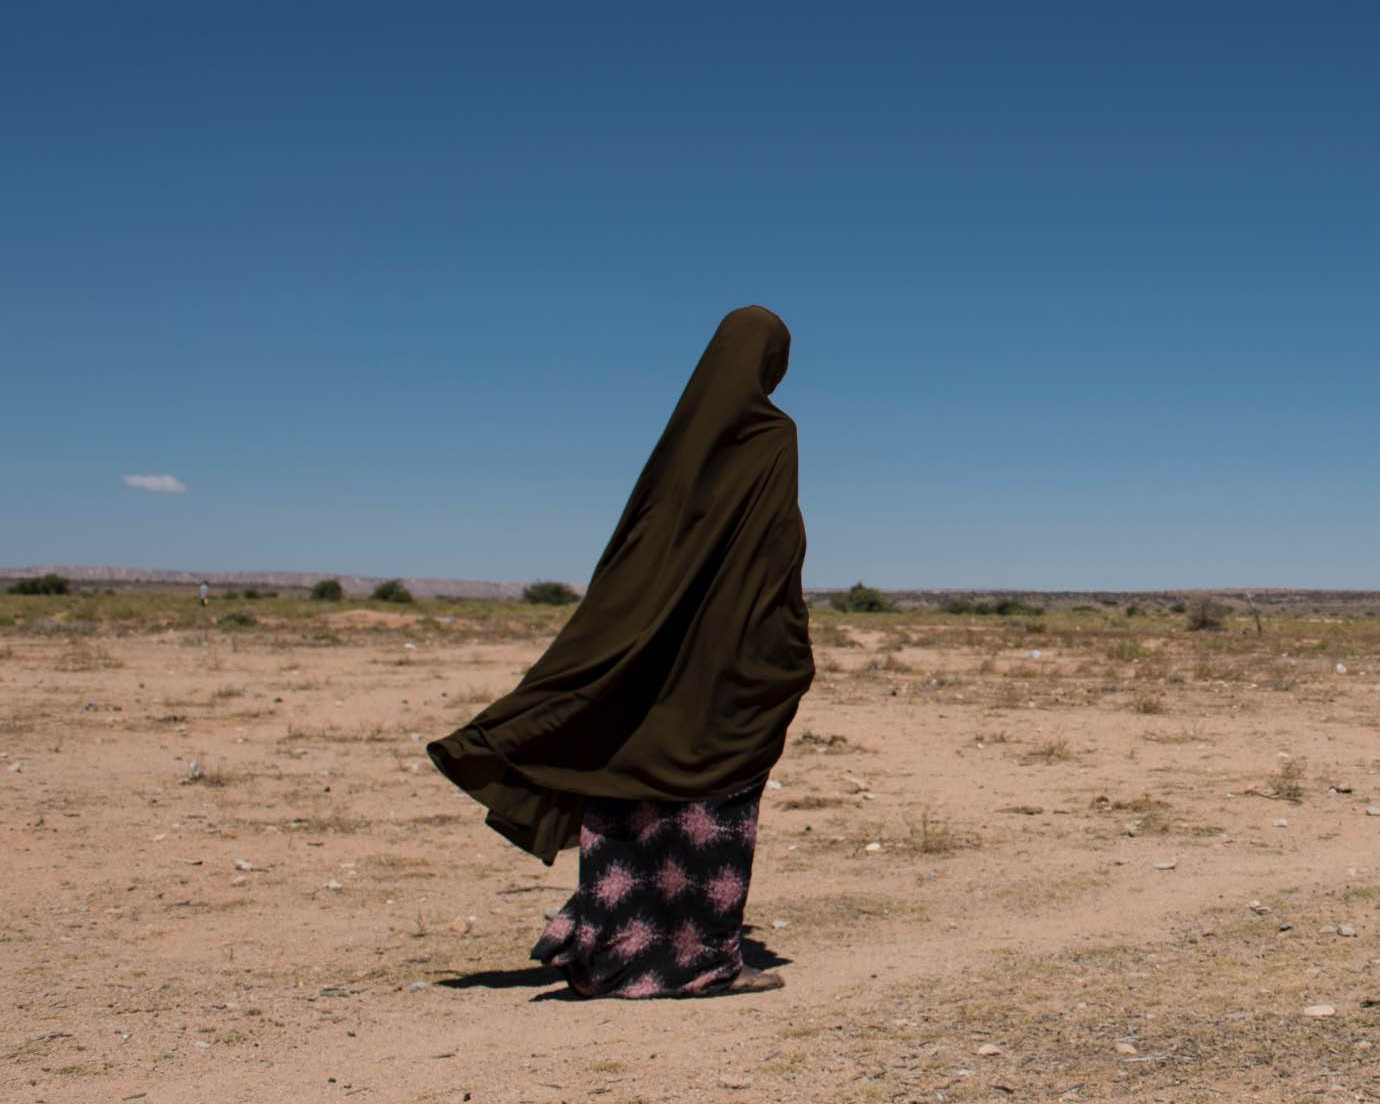 Woman walking across dry landscape